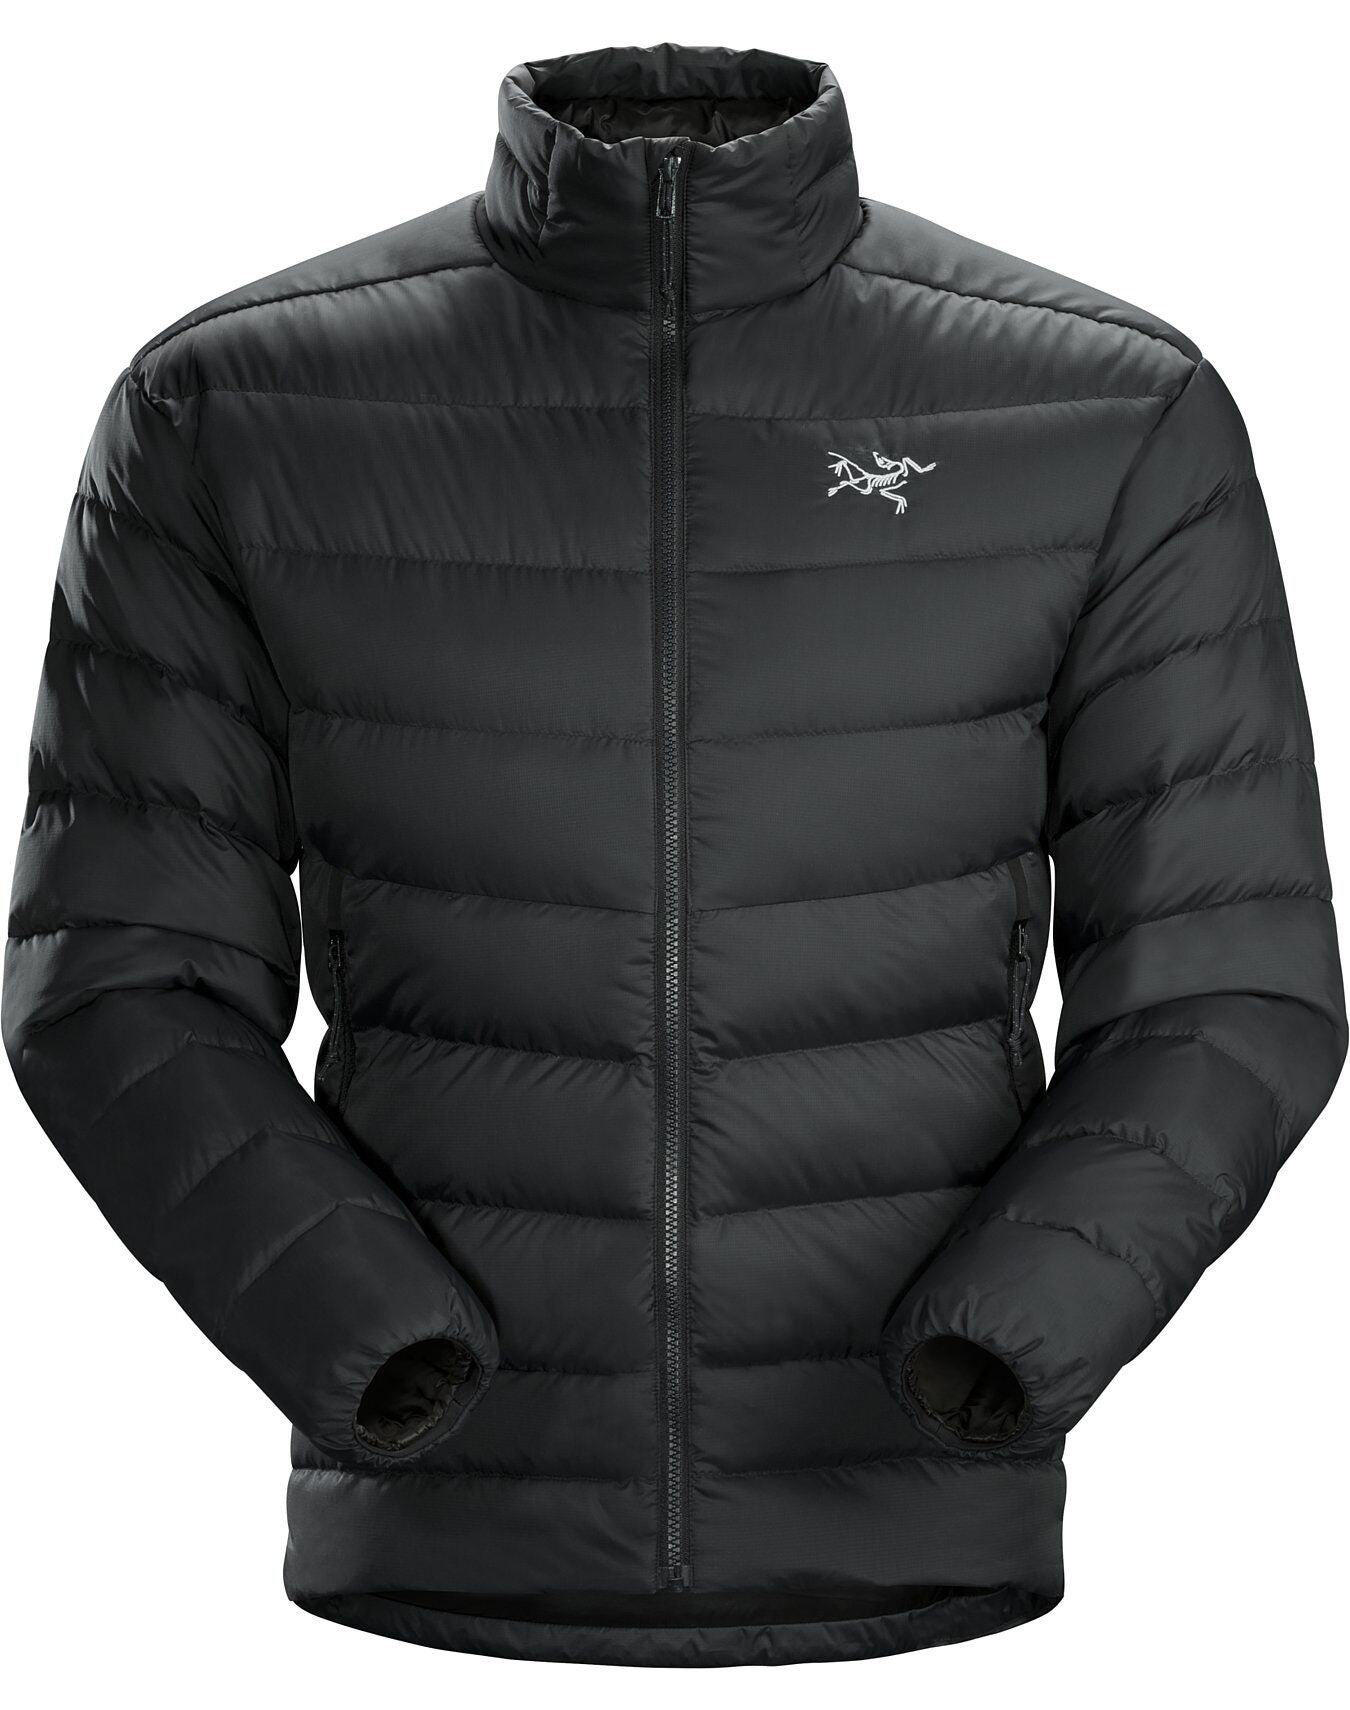 Arc'teryx Thorium AR Jacket - Down jacket - Men's